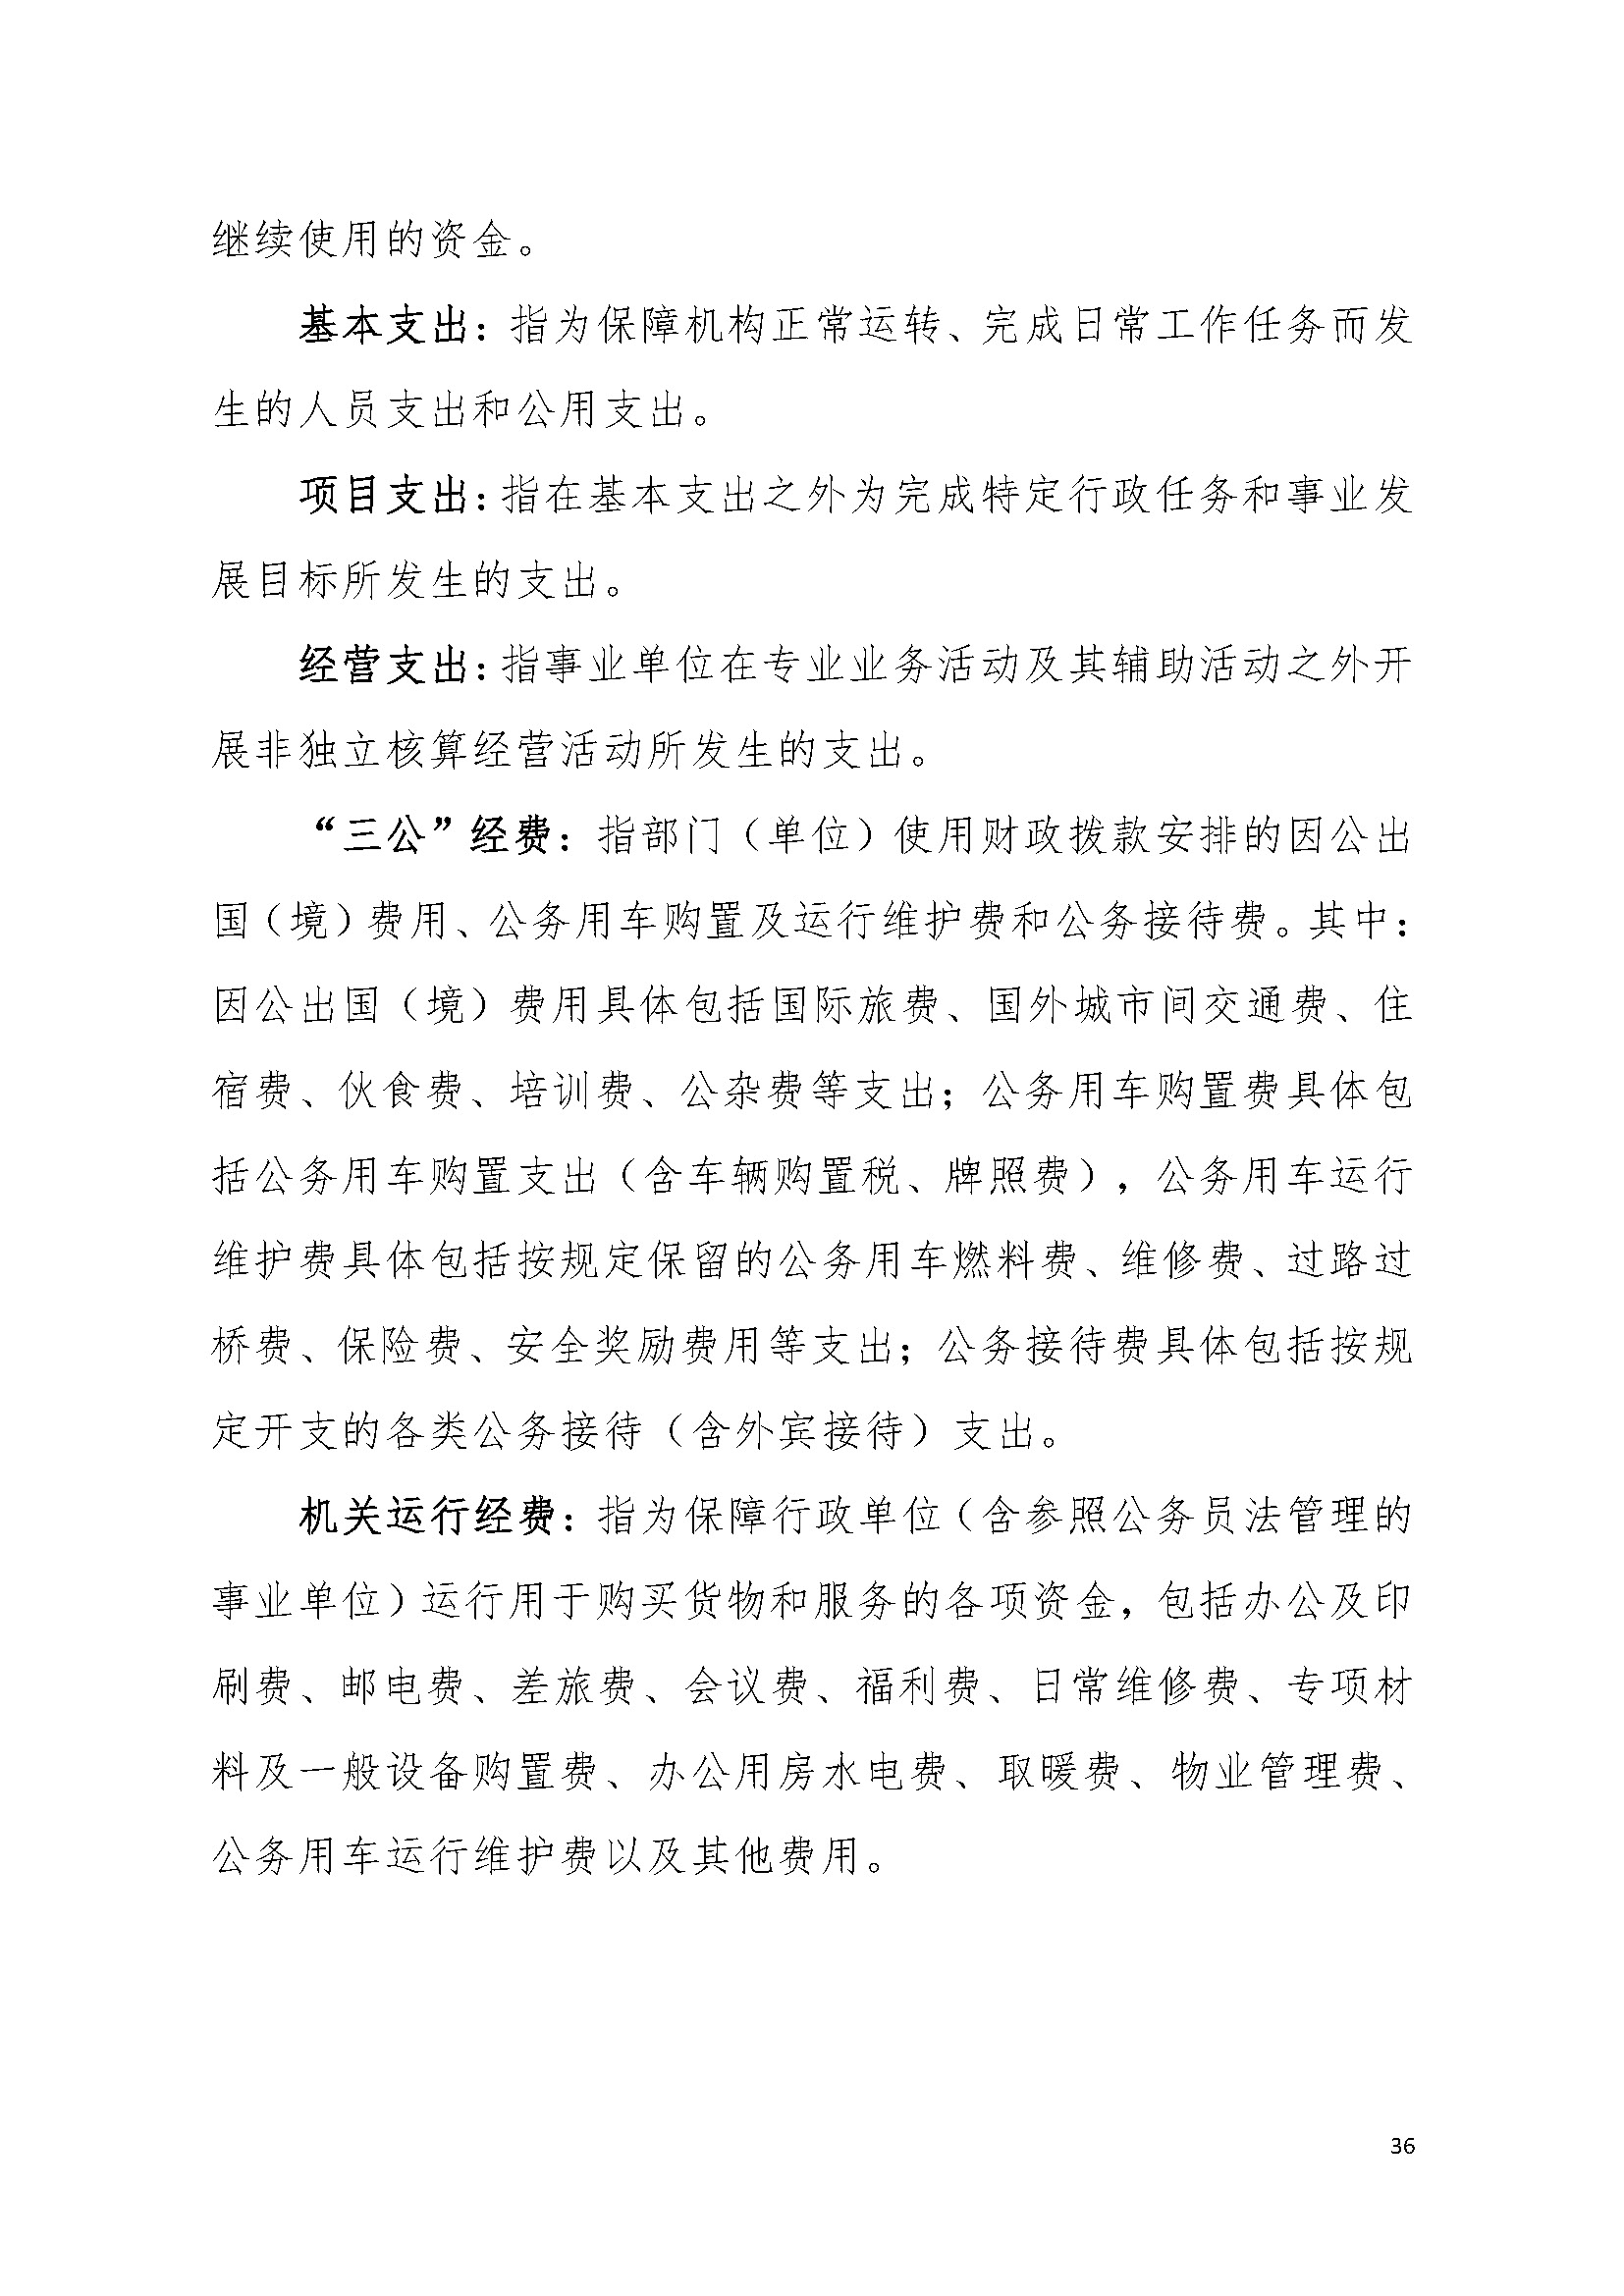 2022年度广东省司法厅部门决算__页面_36.jpg